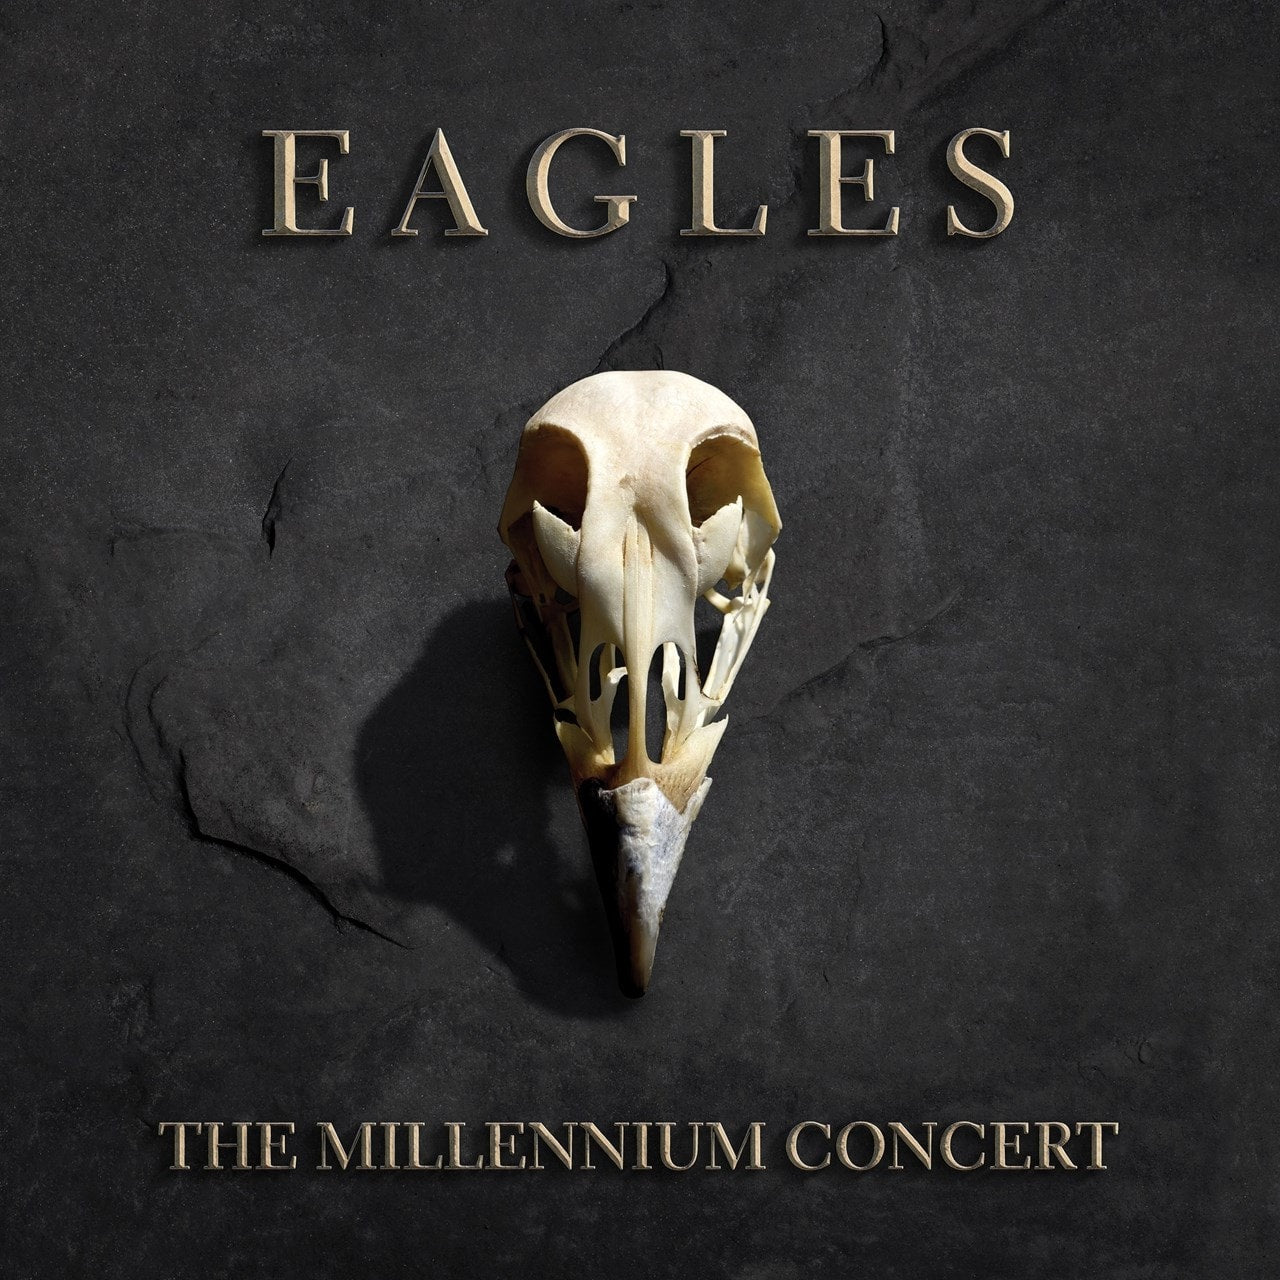 EAGLES - The Millennium Concert - 2LP - 180g Vinyl